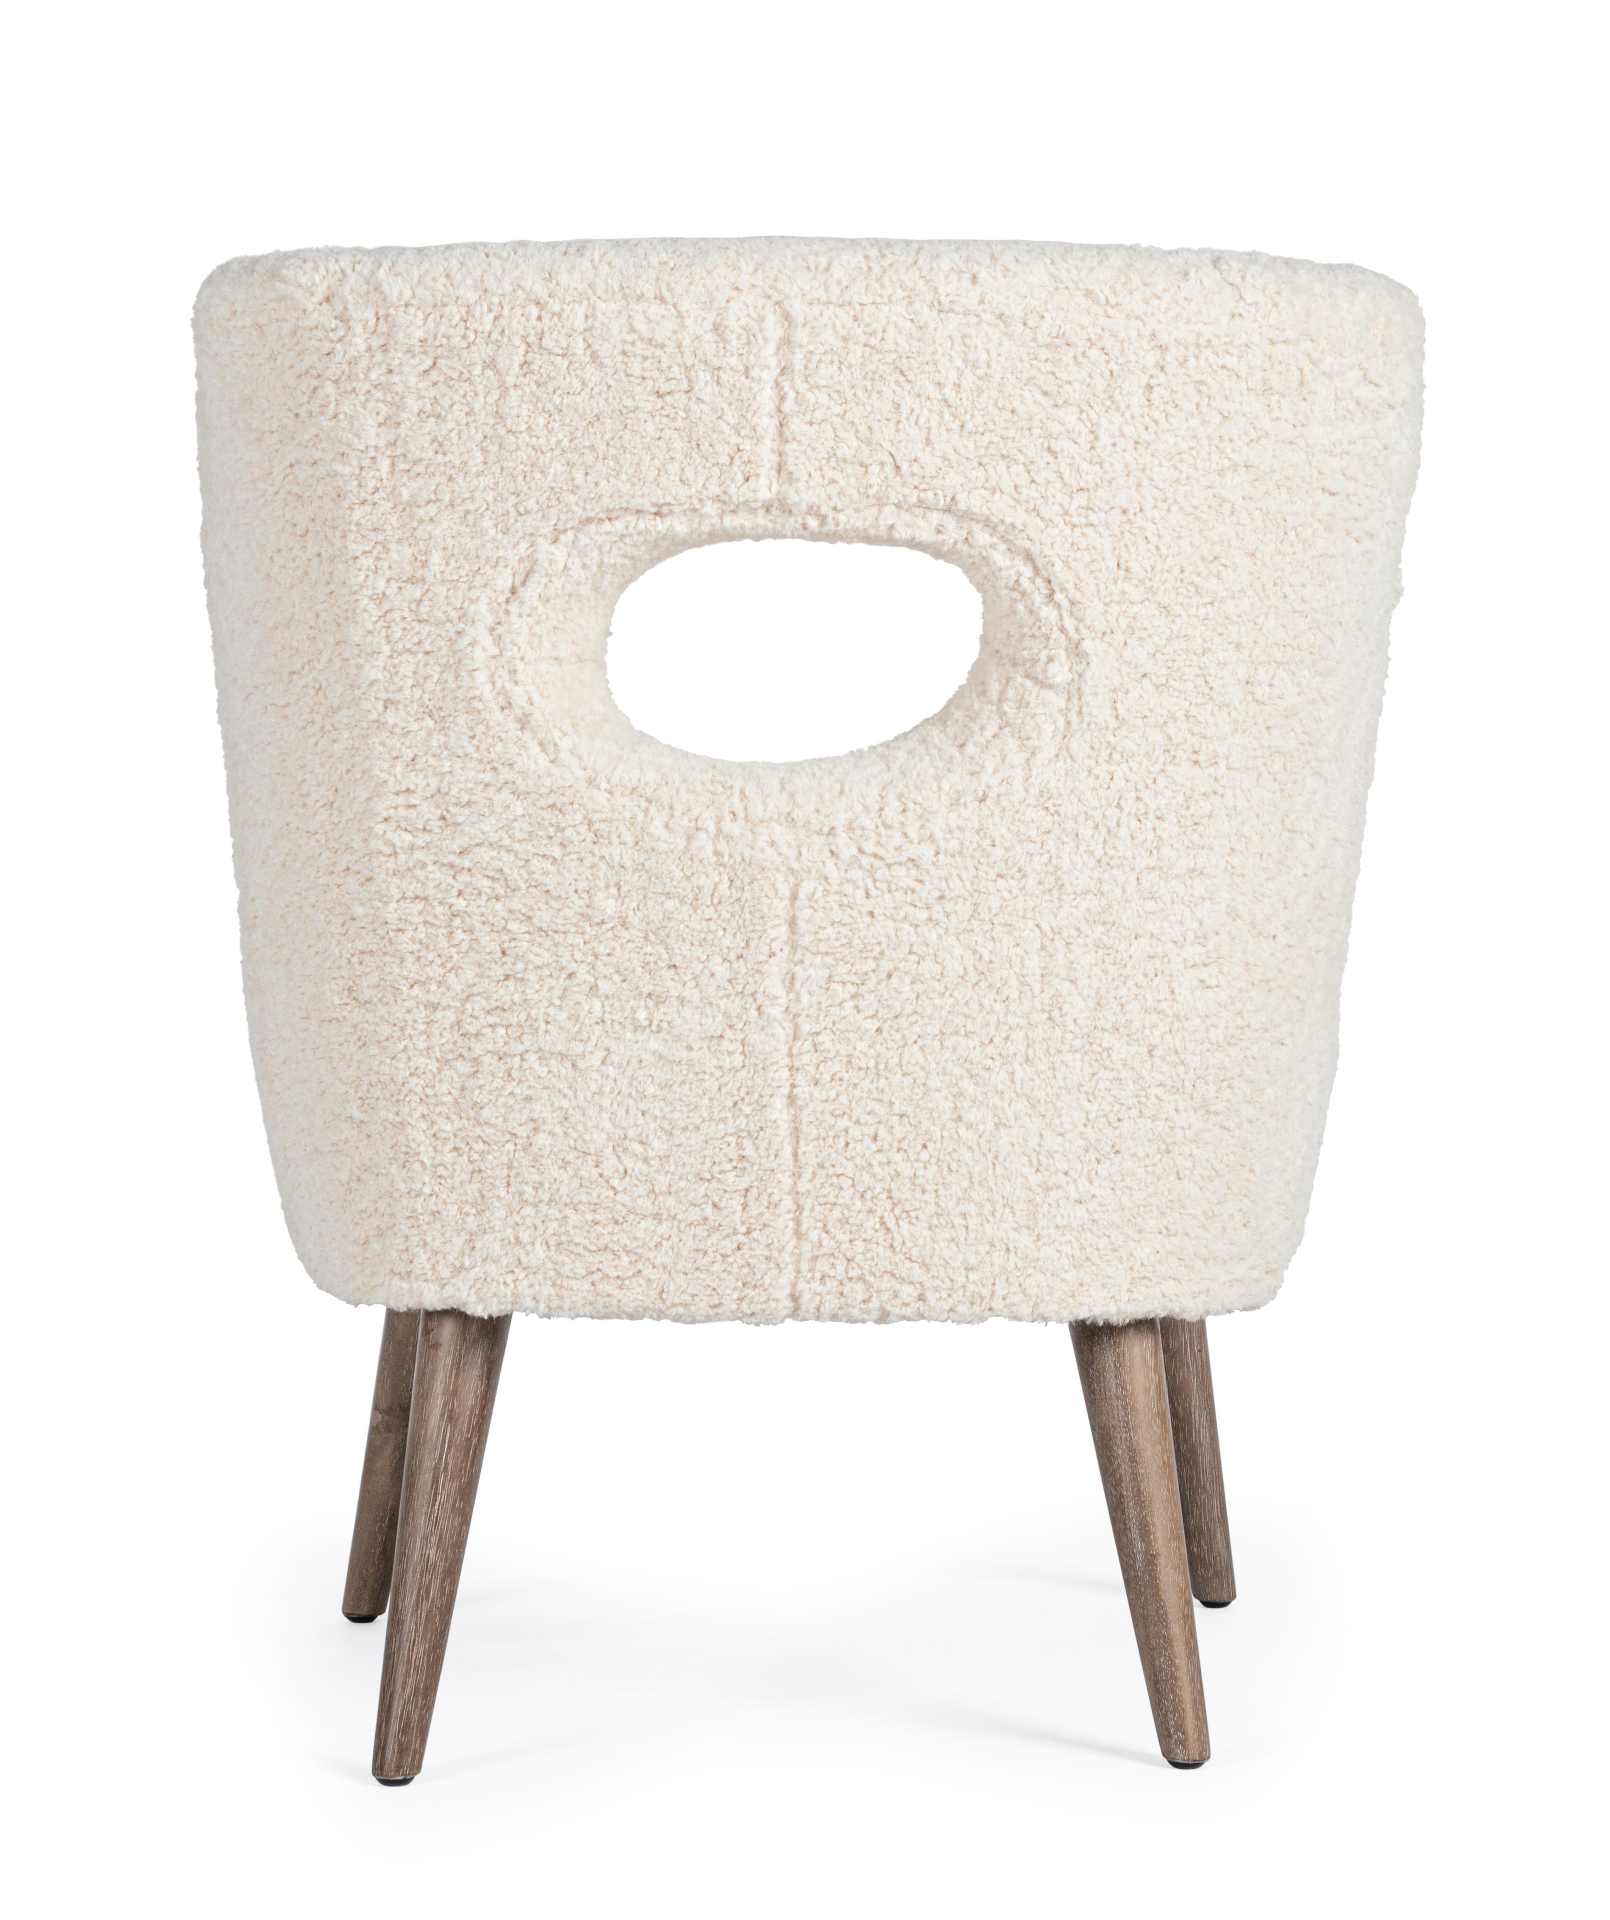 Der Sessel Cortina überzeugt mit seinem modernen Design. Gefertigt wurde er aus Teddy Stoff, welcher einen weißen Farbton besitzt. Das Gestell ist aus Kiefernholz und hat eine natürliche Farbe. Der Sessel besitzt eine Sitzhöhe von 45 cm. Die Breite beträg